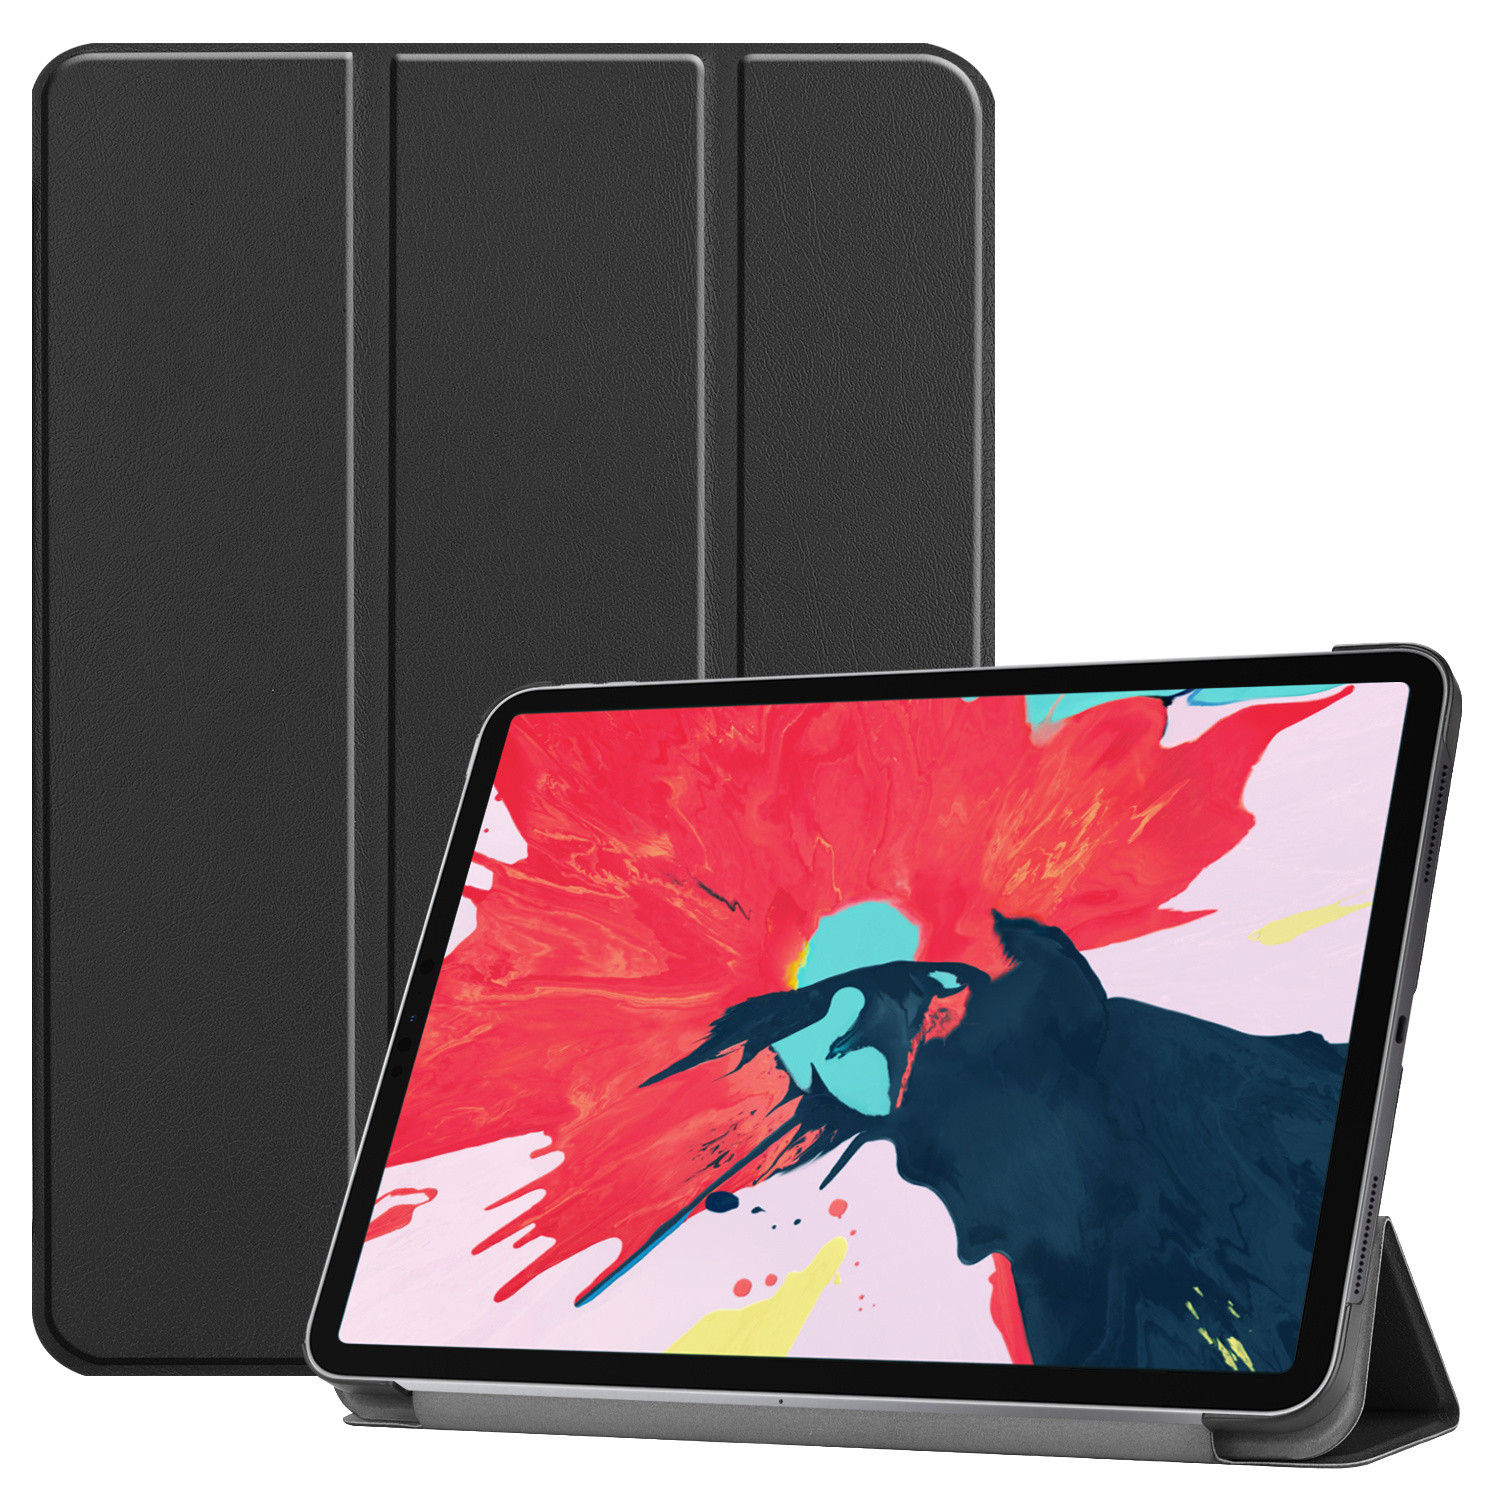 3-Vouw sleepcover hoes - iPad Pro 11 inch (2020) - Zwart